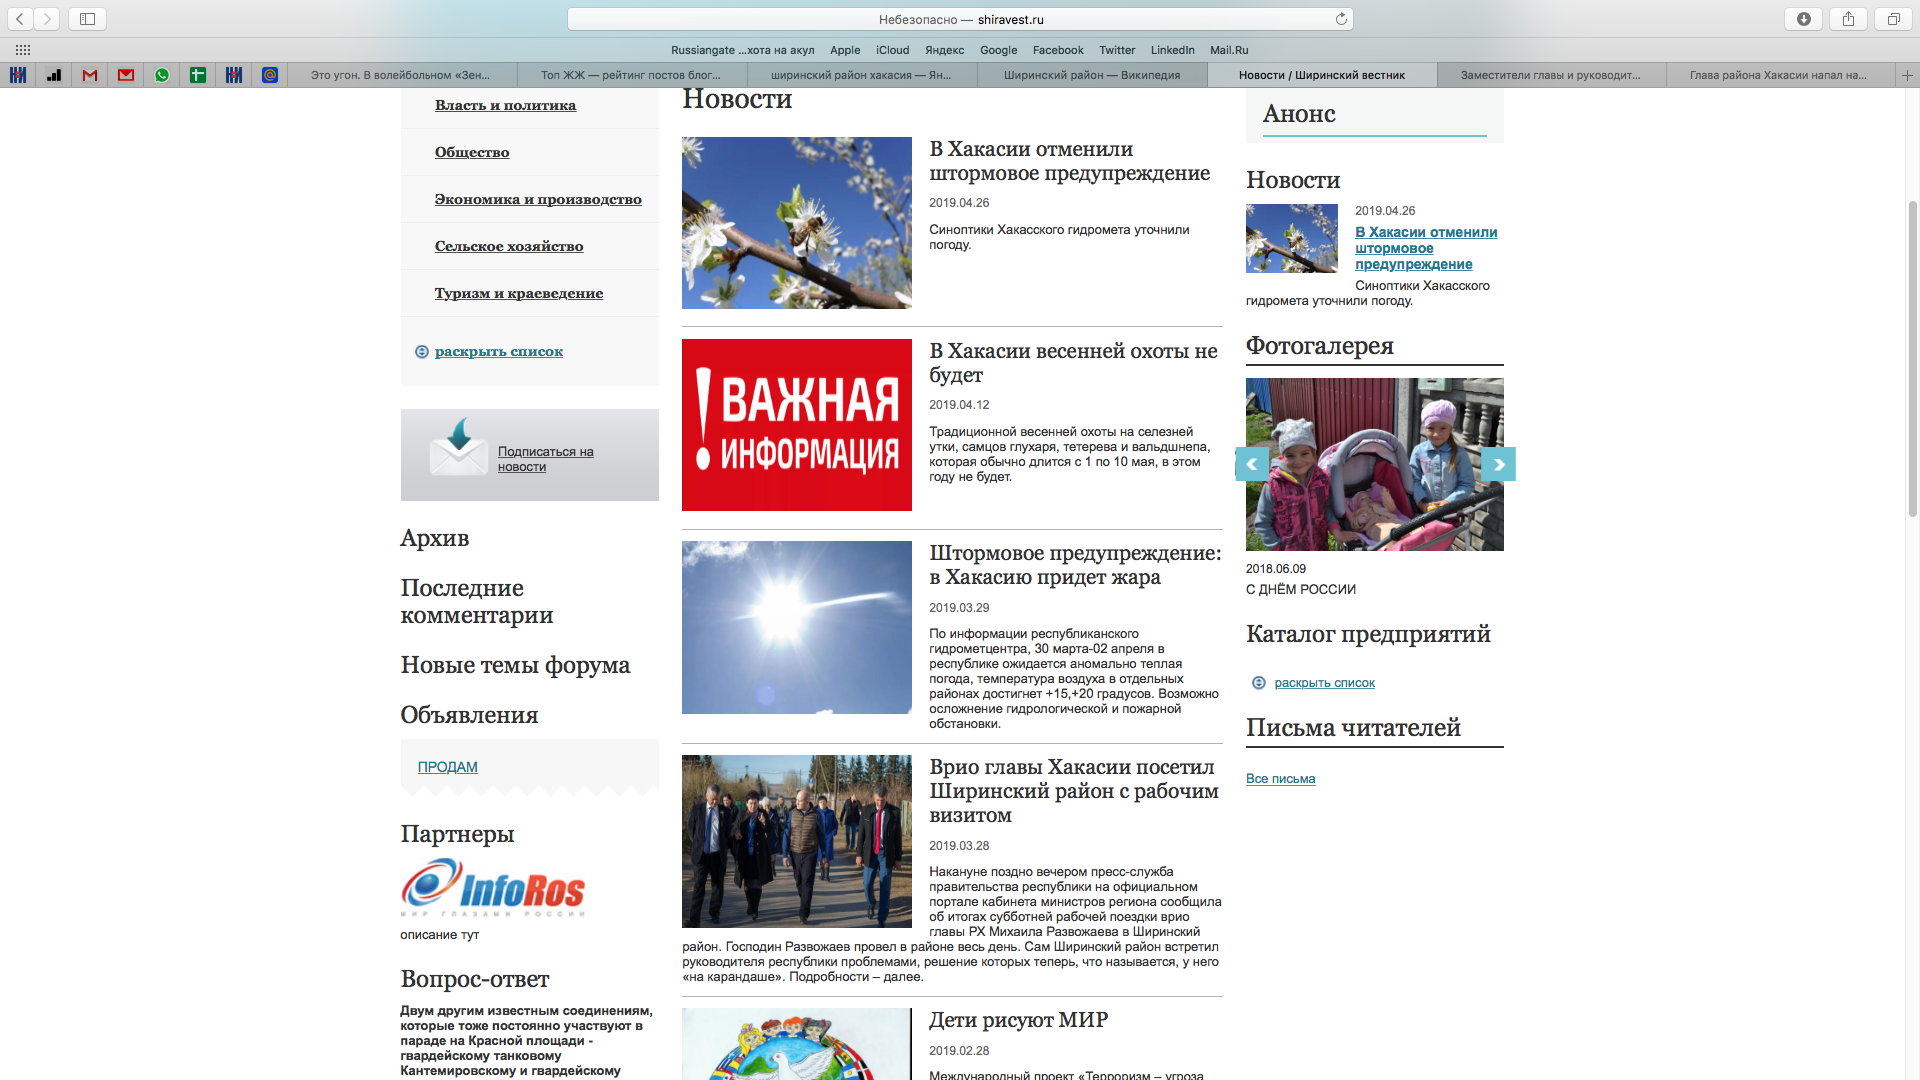 В разделе Новости последняя заметка месячной давности - от 26 апреля